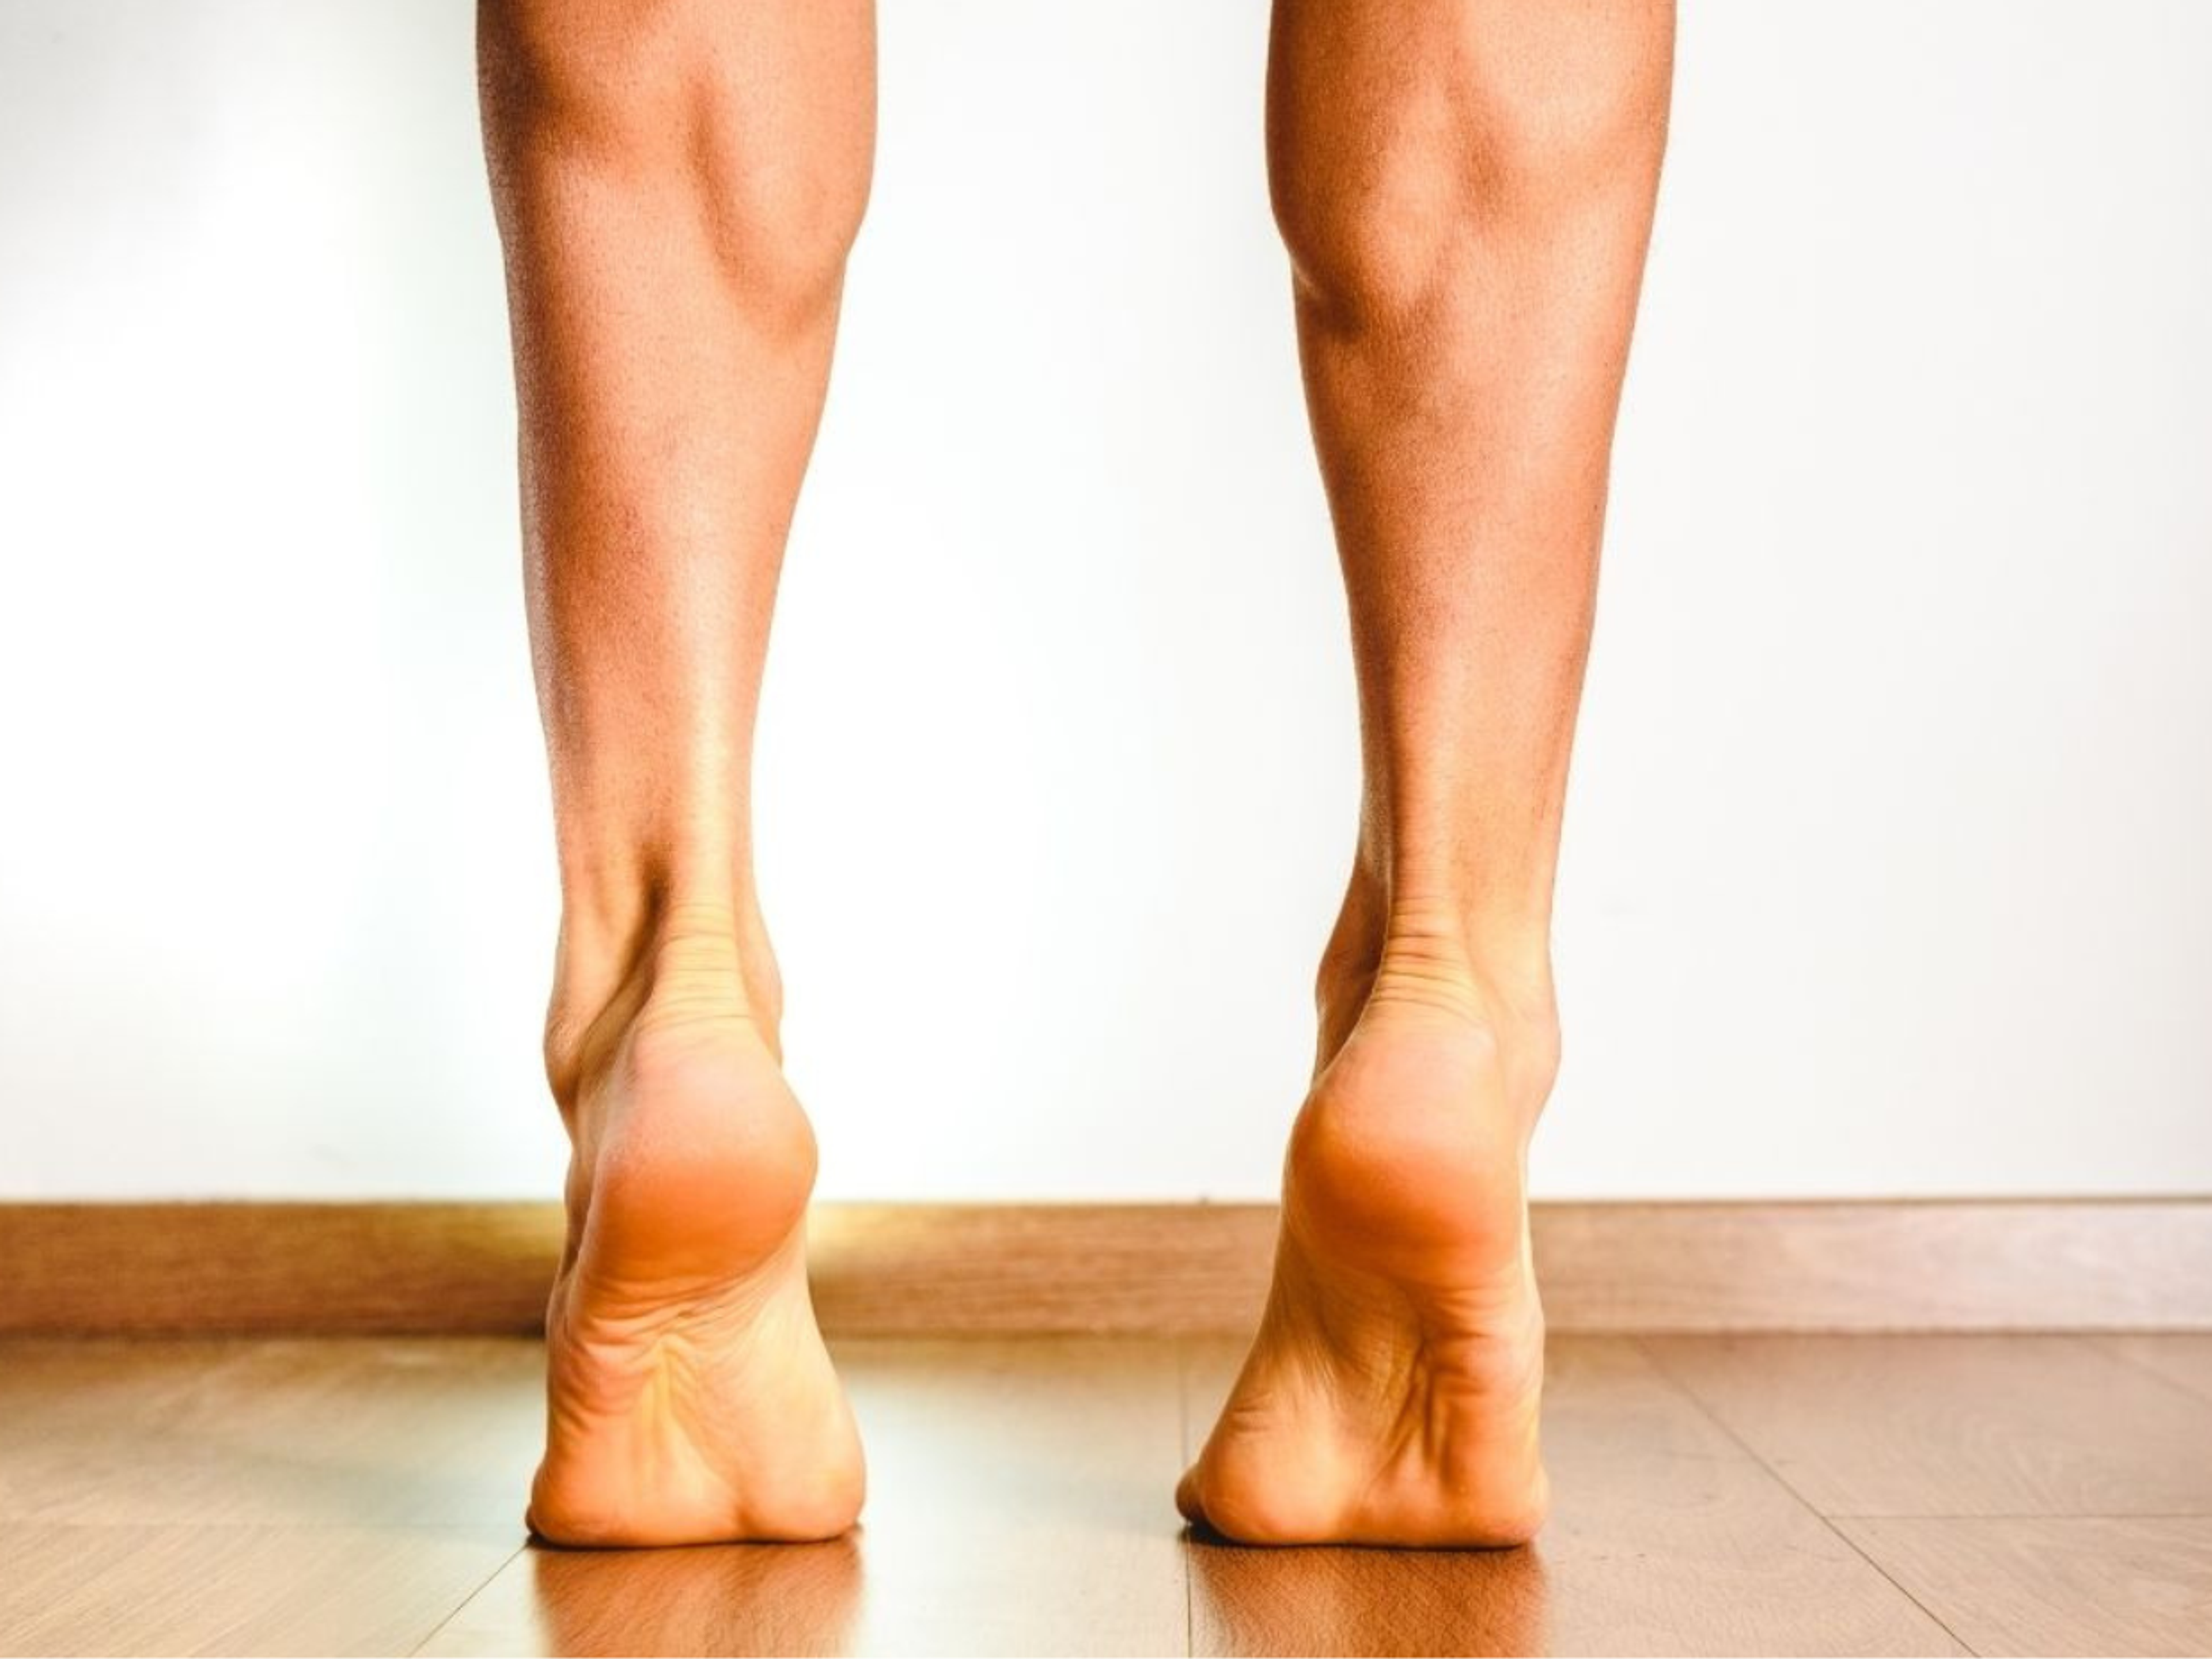 Fersenheben ist eine gute Übung zur Stärkung der Plantarfaszie, die gegen Fußschmerzen hilft